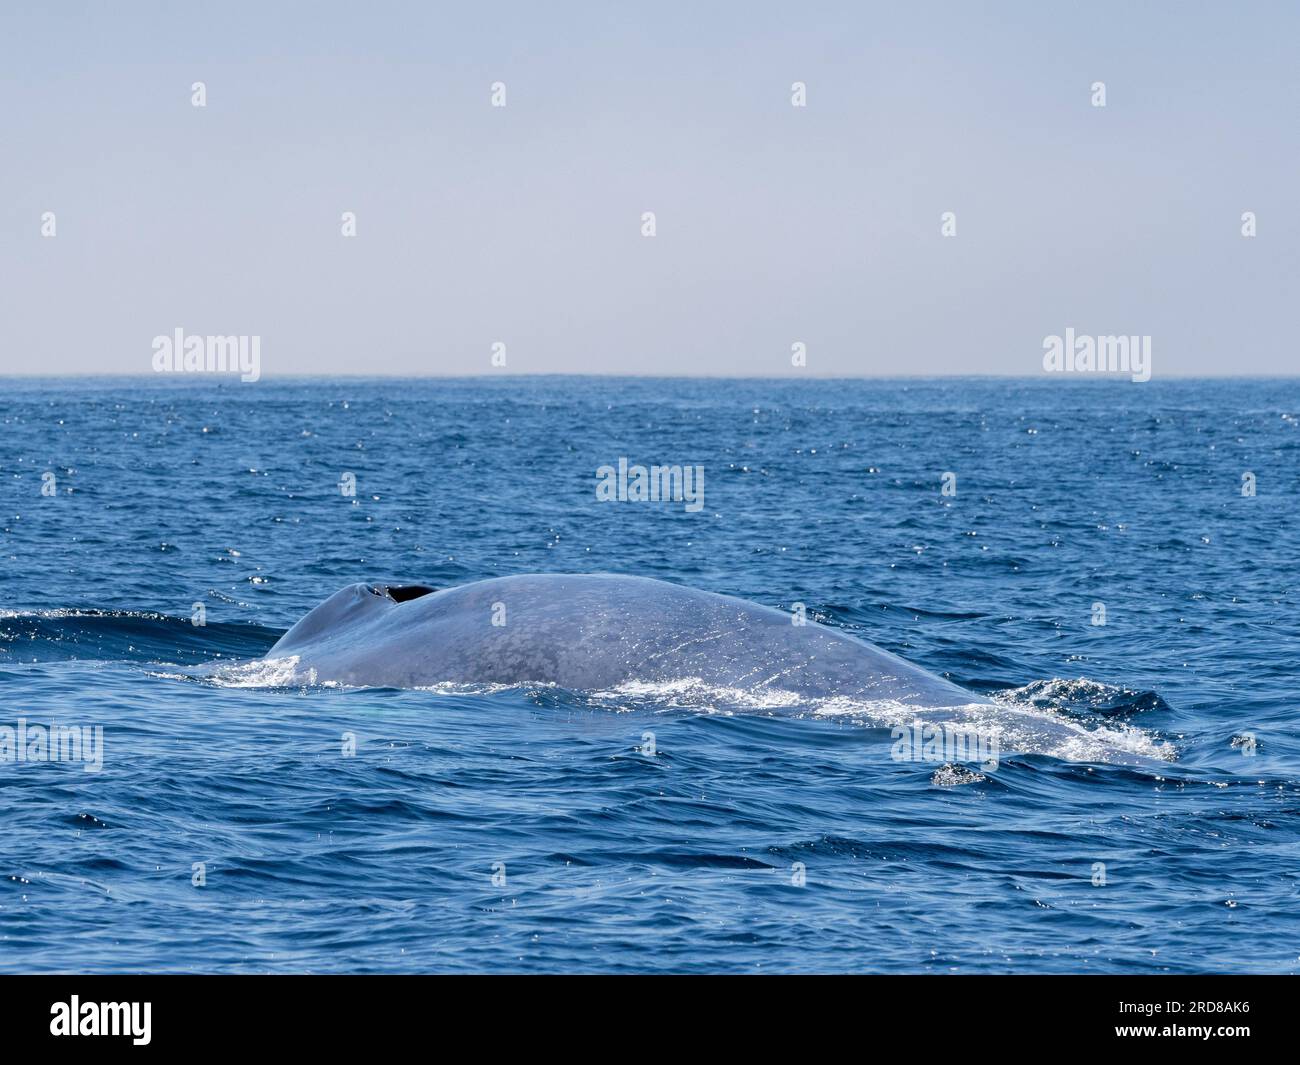 Baleine bleue adulte (Balaenoptera musculus), faisant surface dans le sanctuaire marin de Monterey Bay, Californie, États-Unis d'Amérique, Amérique du Nord Banque D'Images